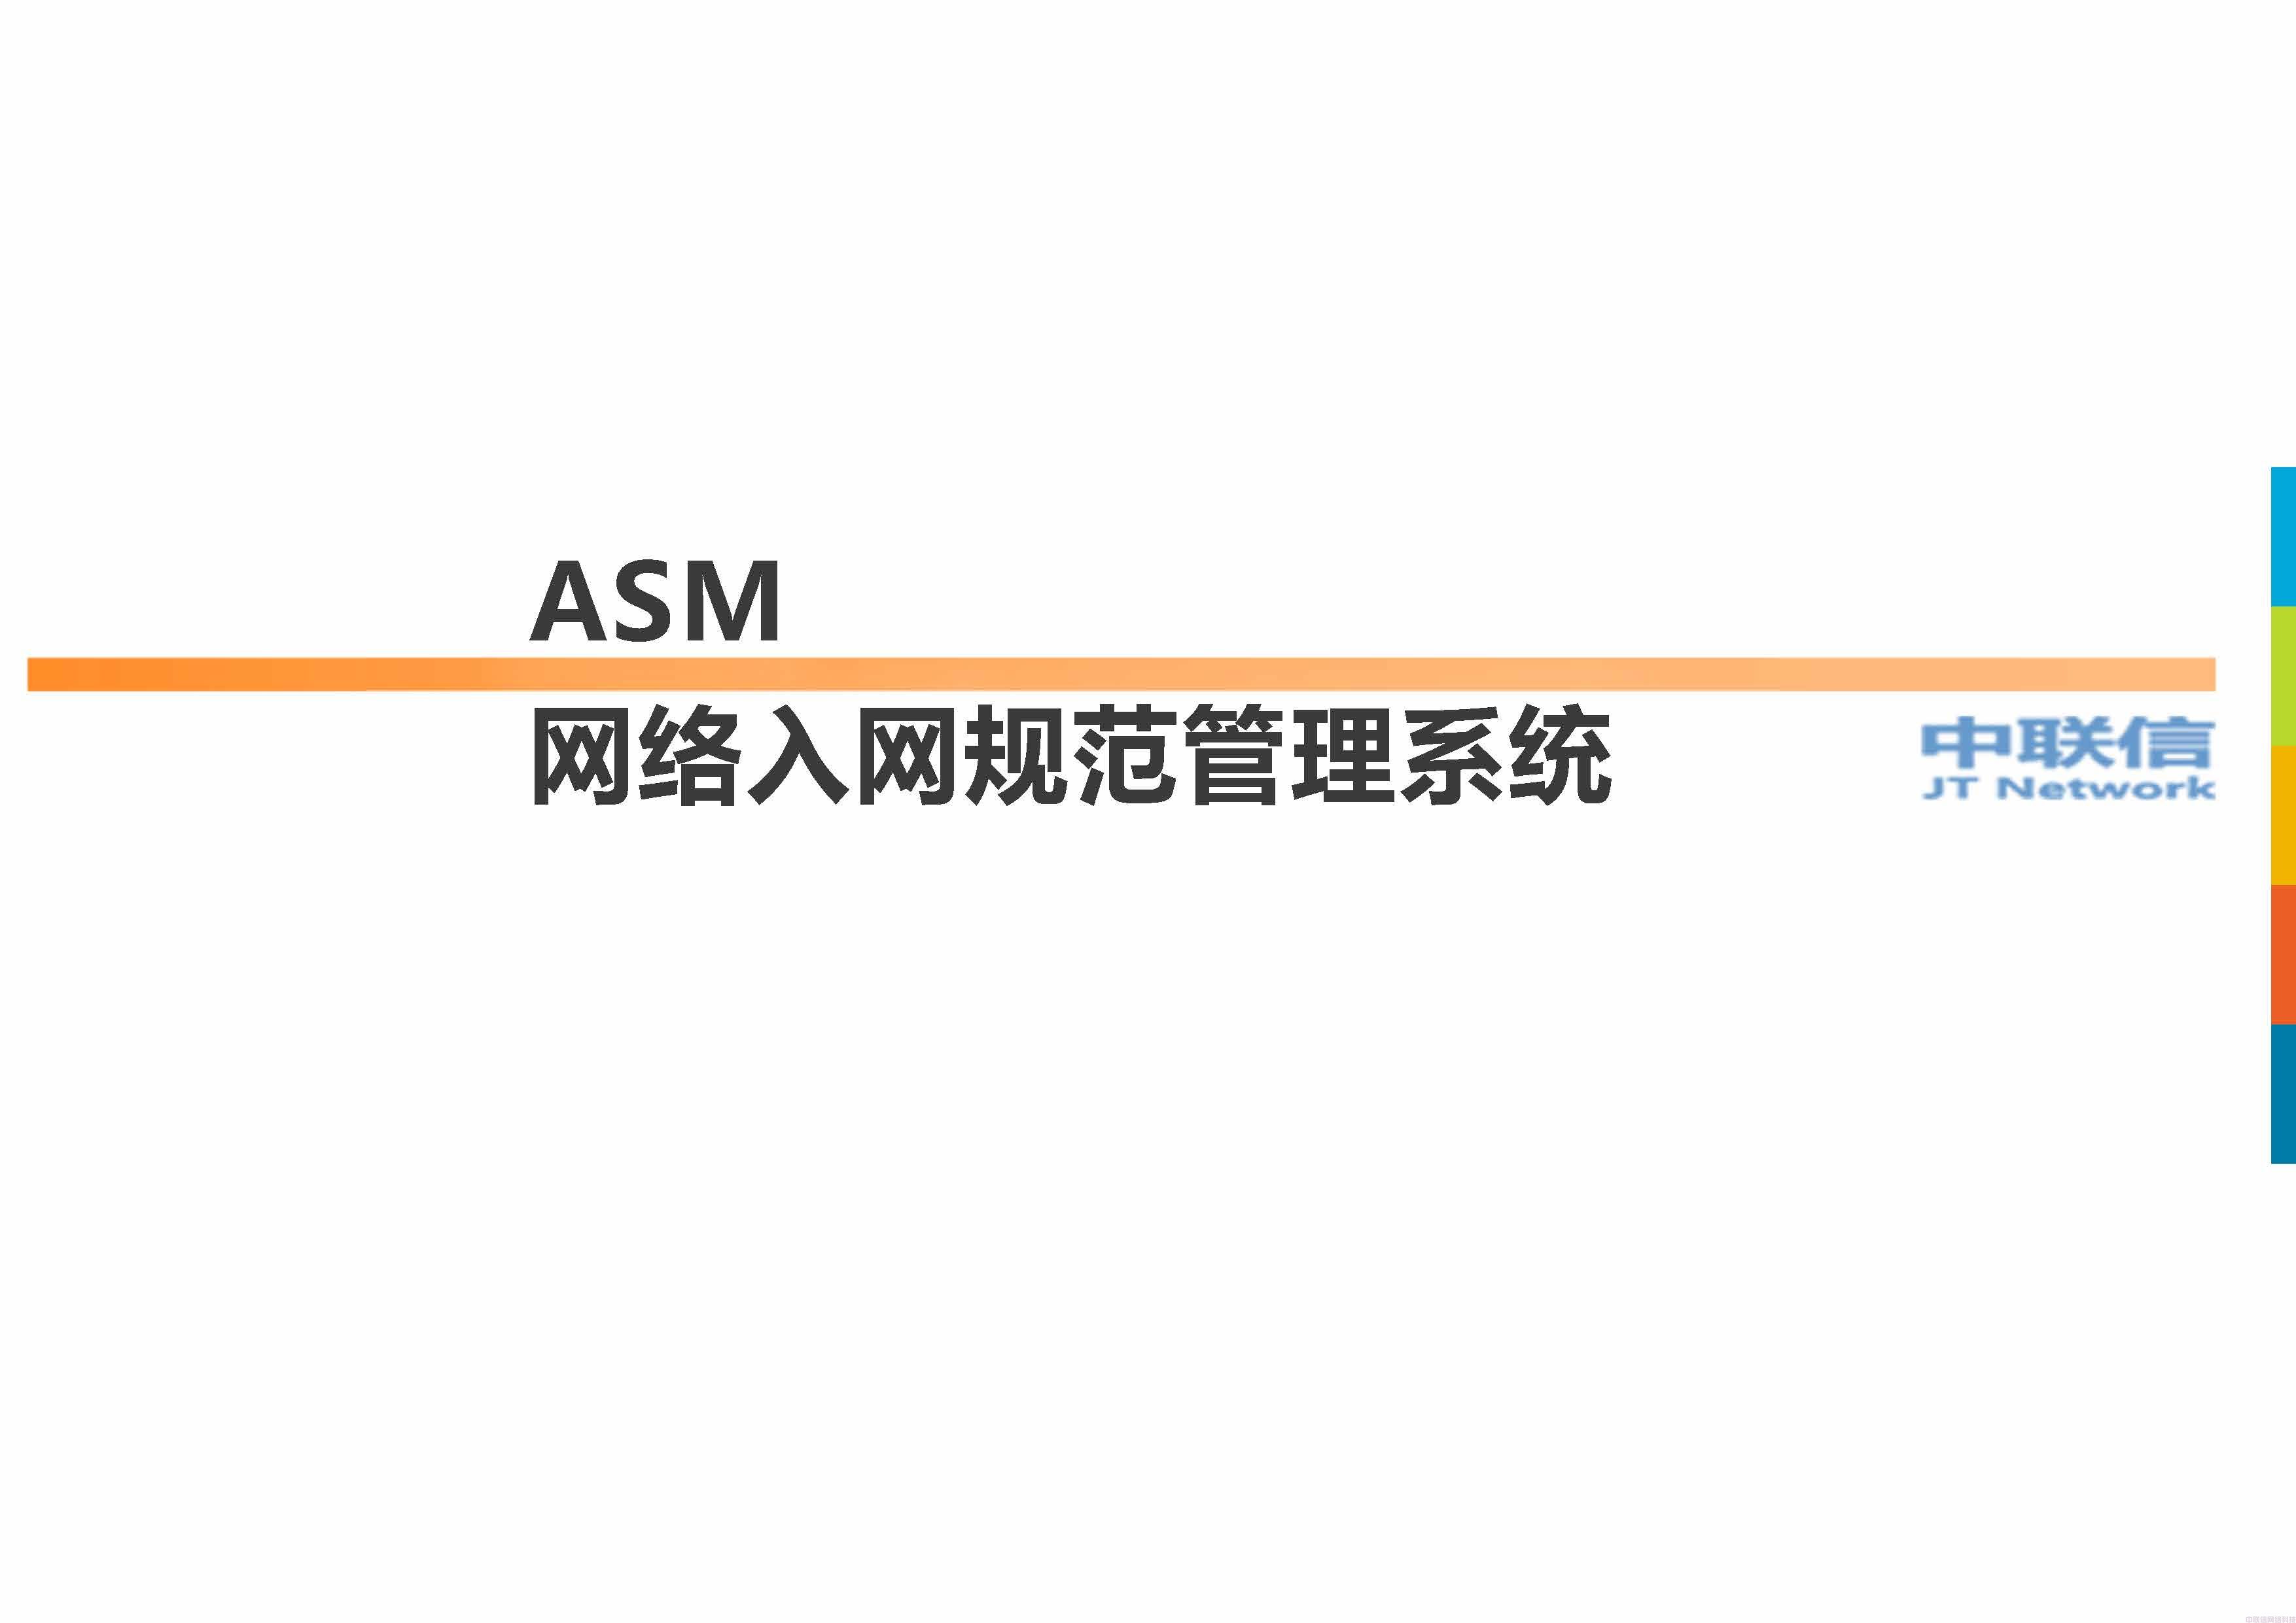 网络准入ASM入网规范管理系统方案介绍 